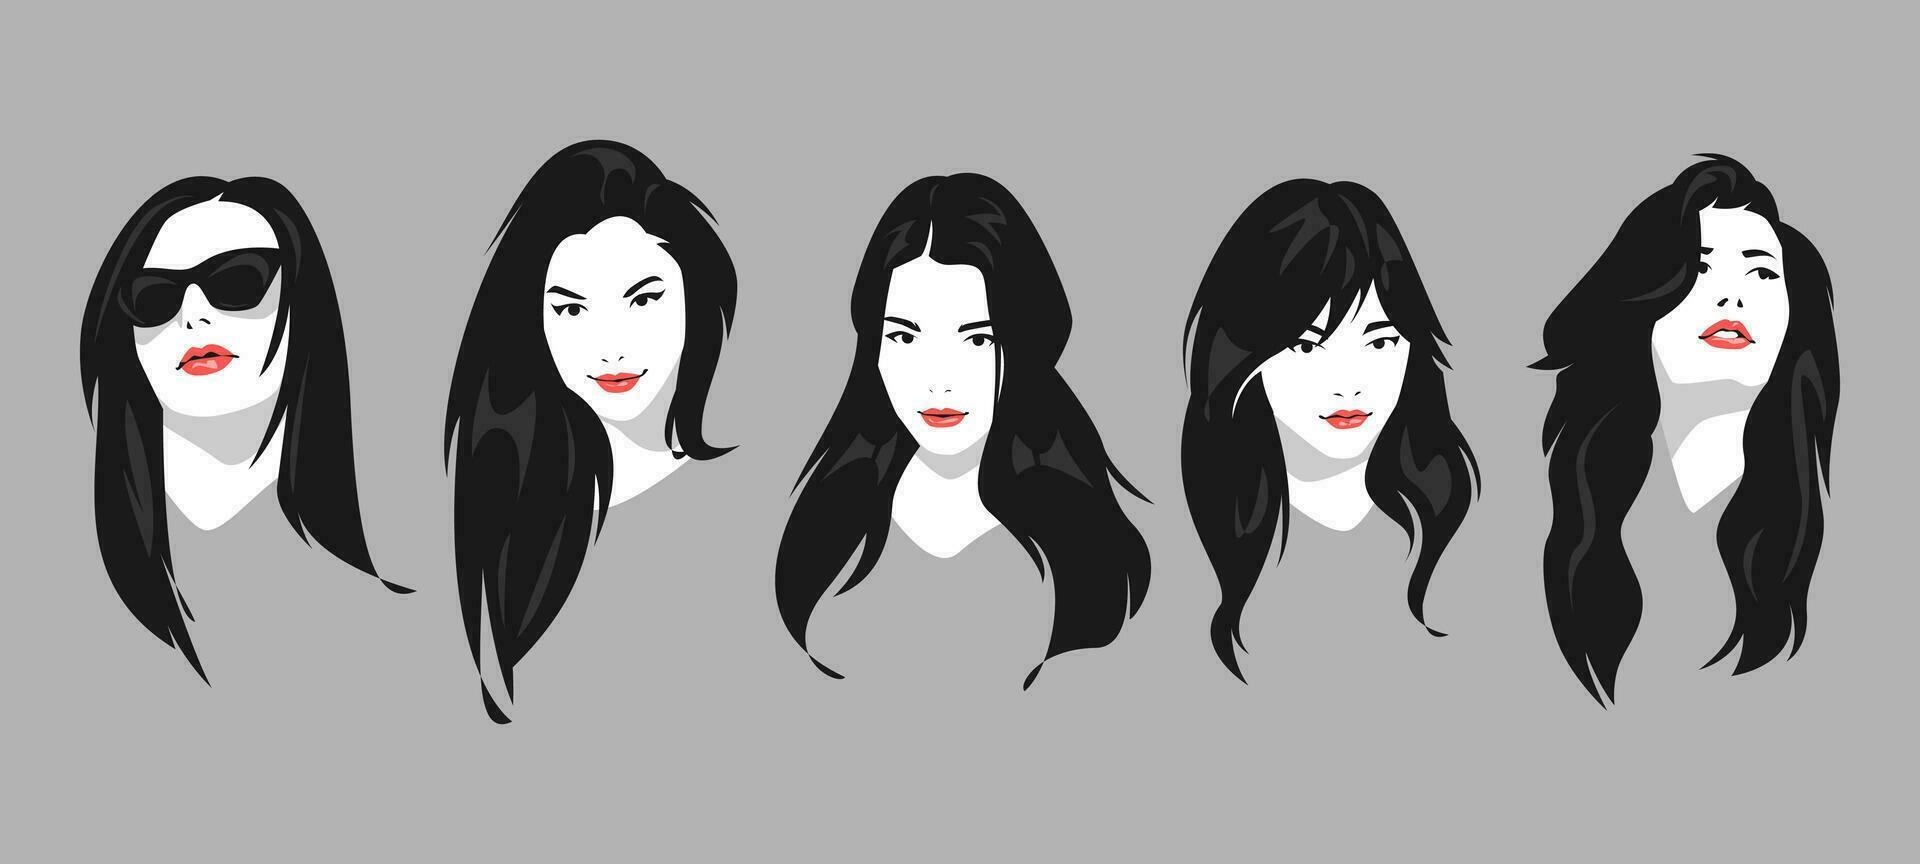 conjunto de varios retratos de hermosa y atractivo De las mujeres caras con diferente peinados, aspecto. para imprimir, póster, cubrir, camiseta, y otro diseño. vector gráfico.